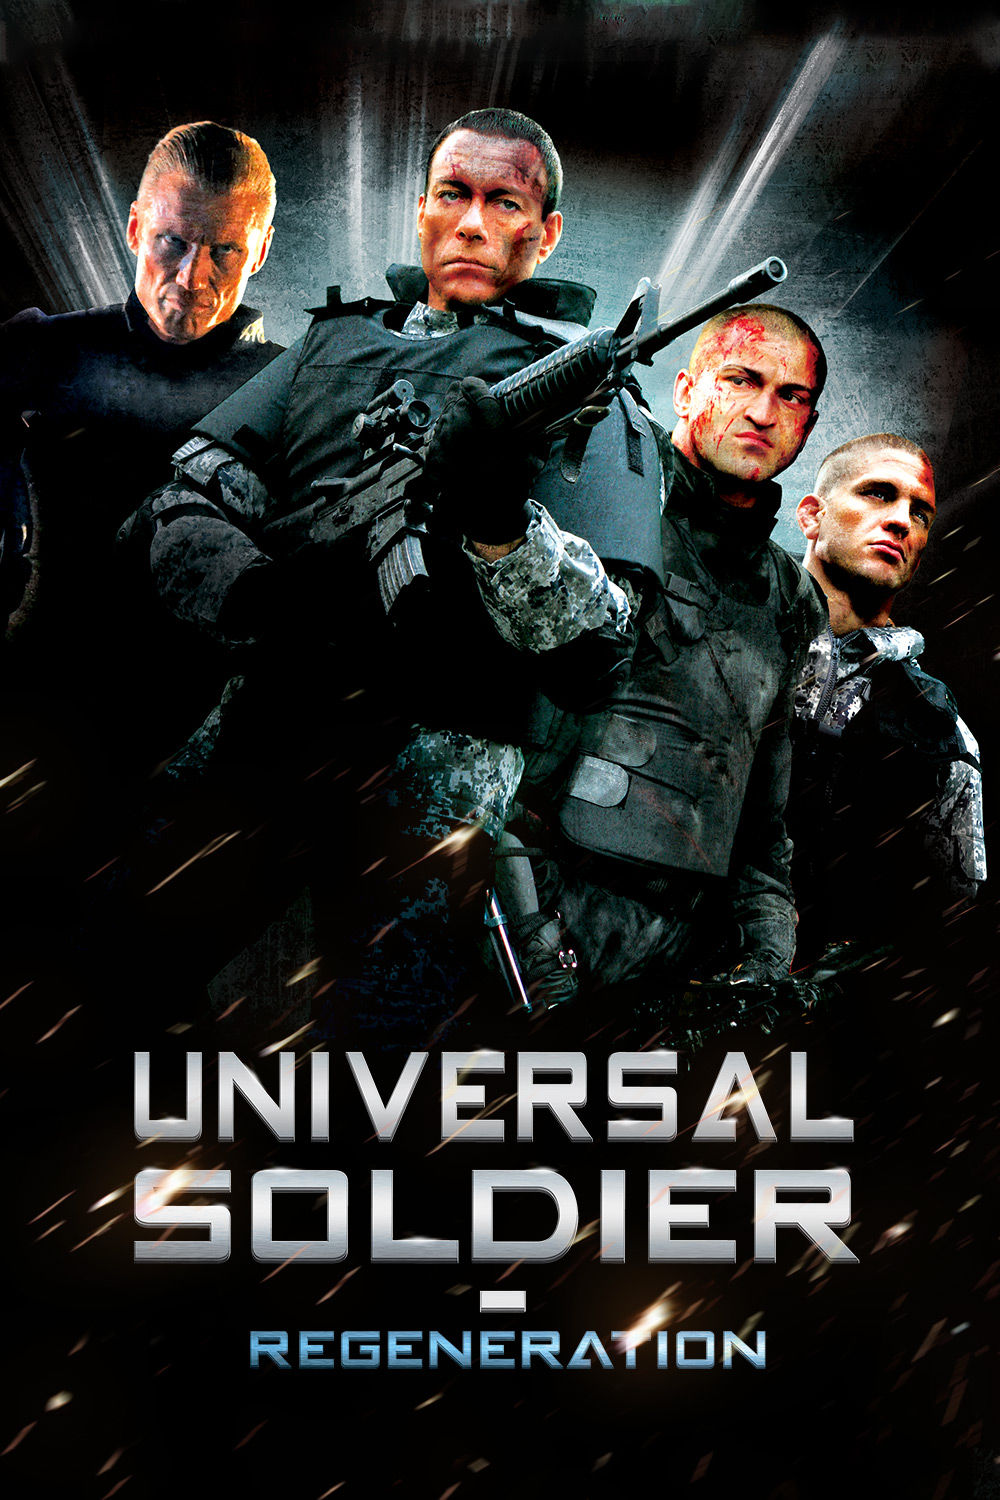 Universal Soldier Regeneration